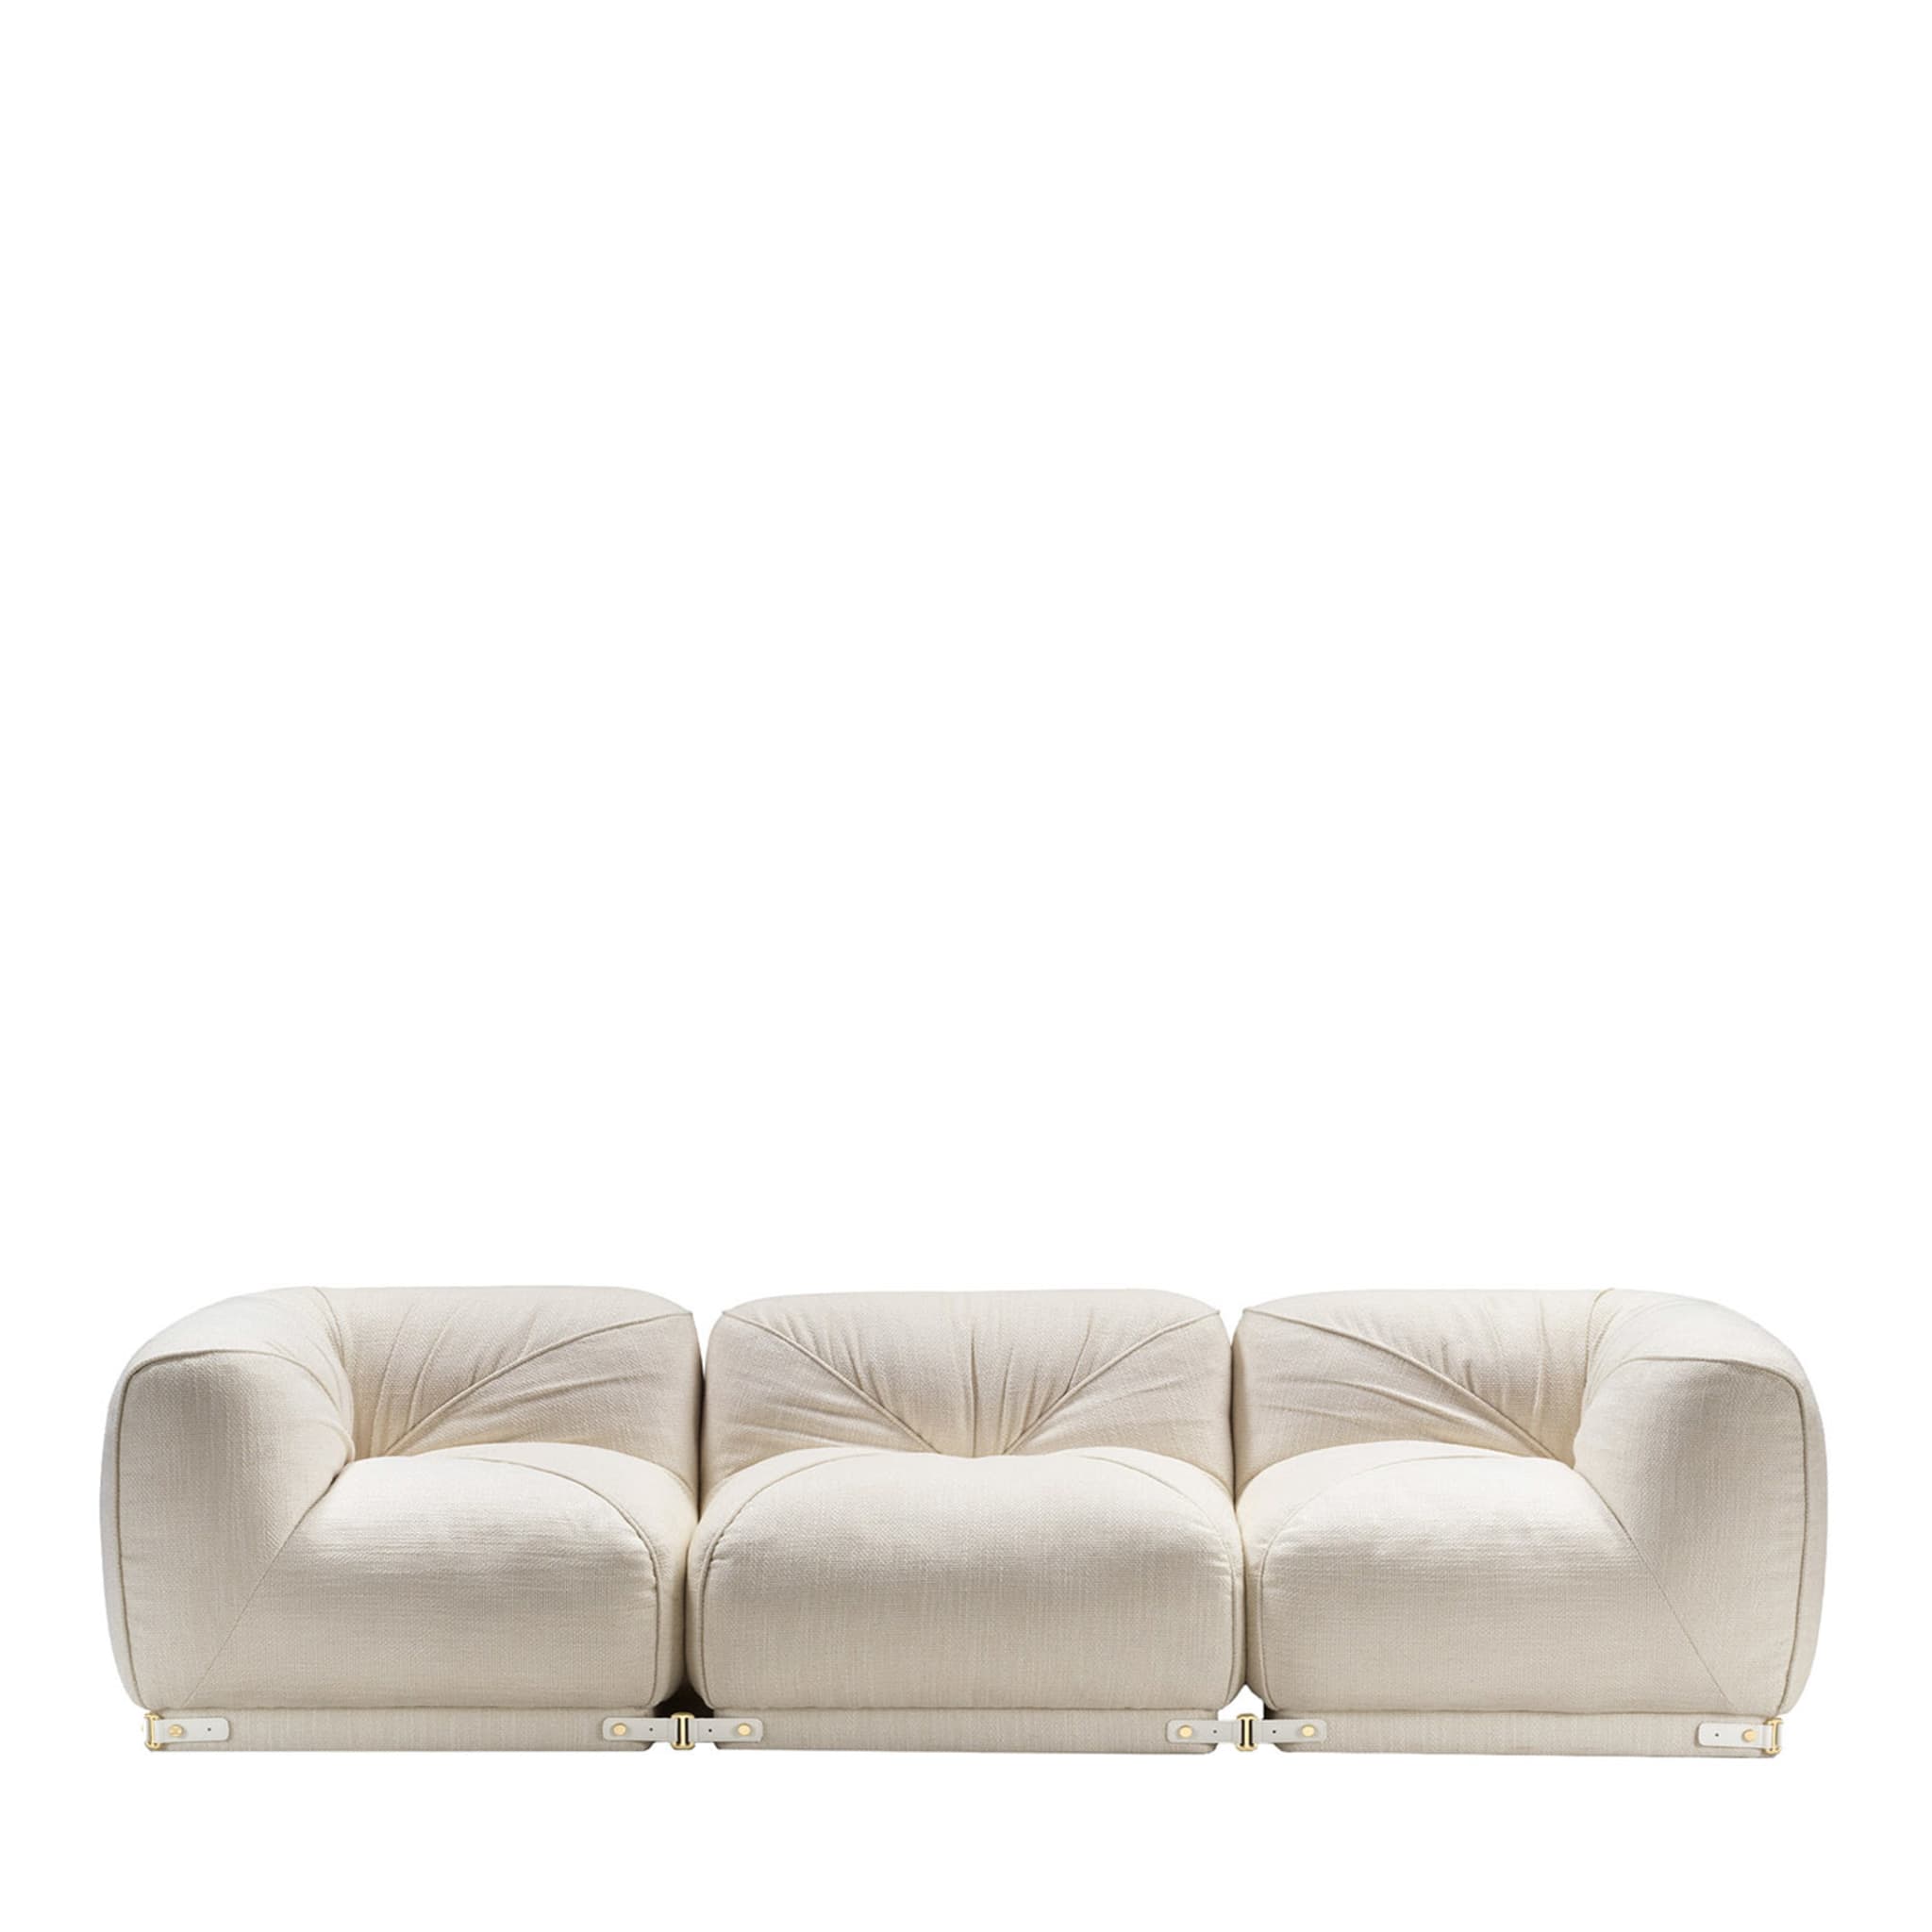 Leisure 3-sitzer weißes sofa by Lorenza Bozzoli - Hauptansicht